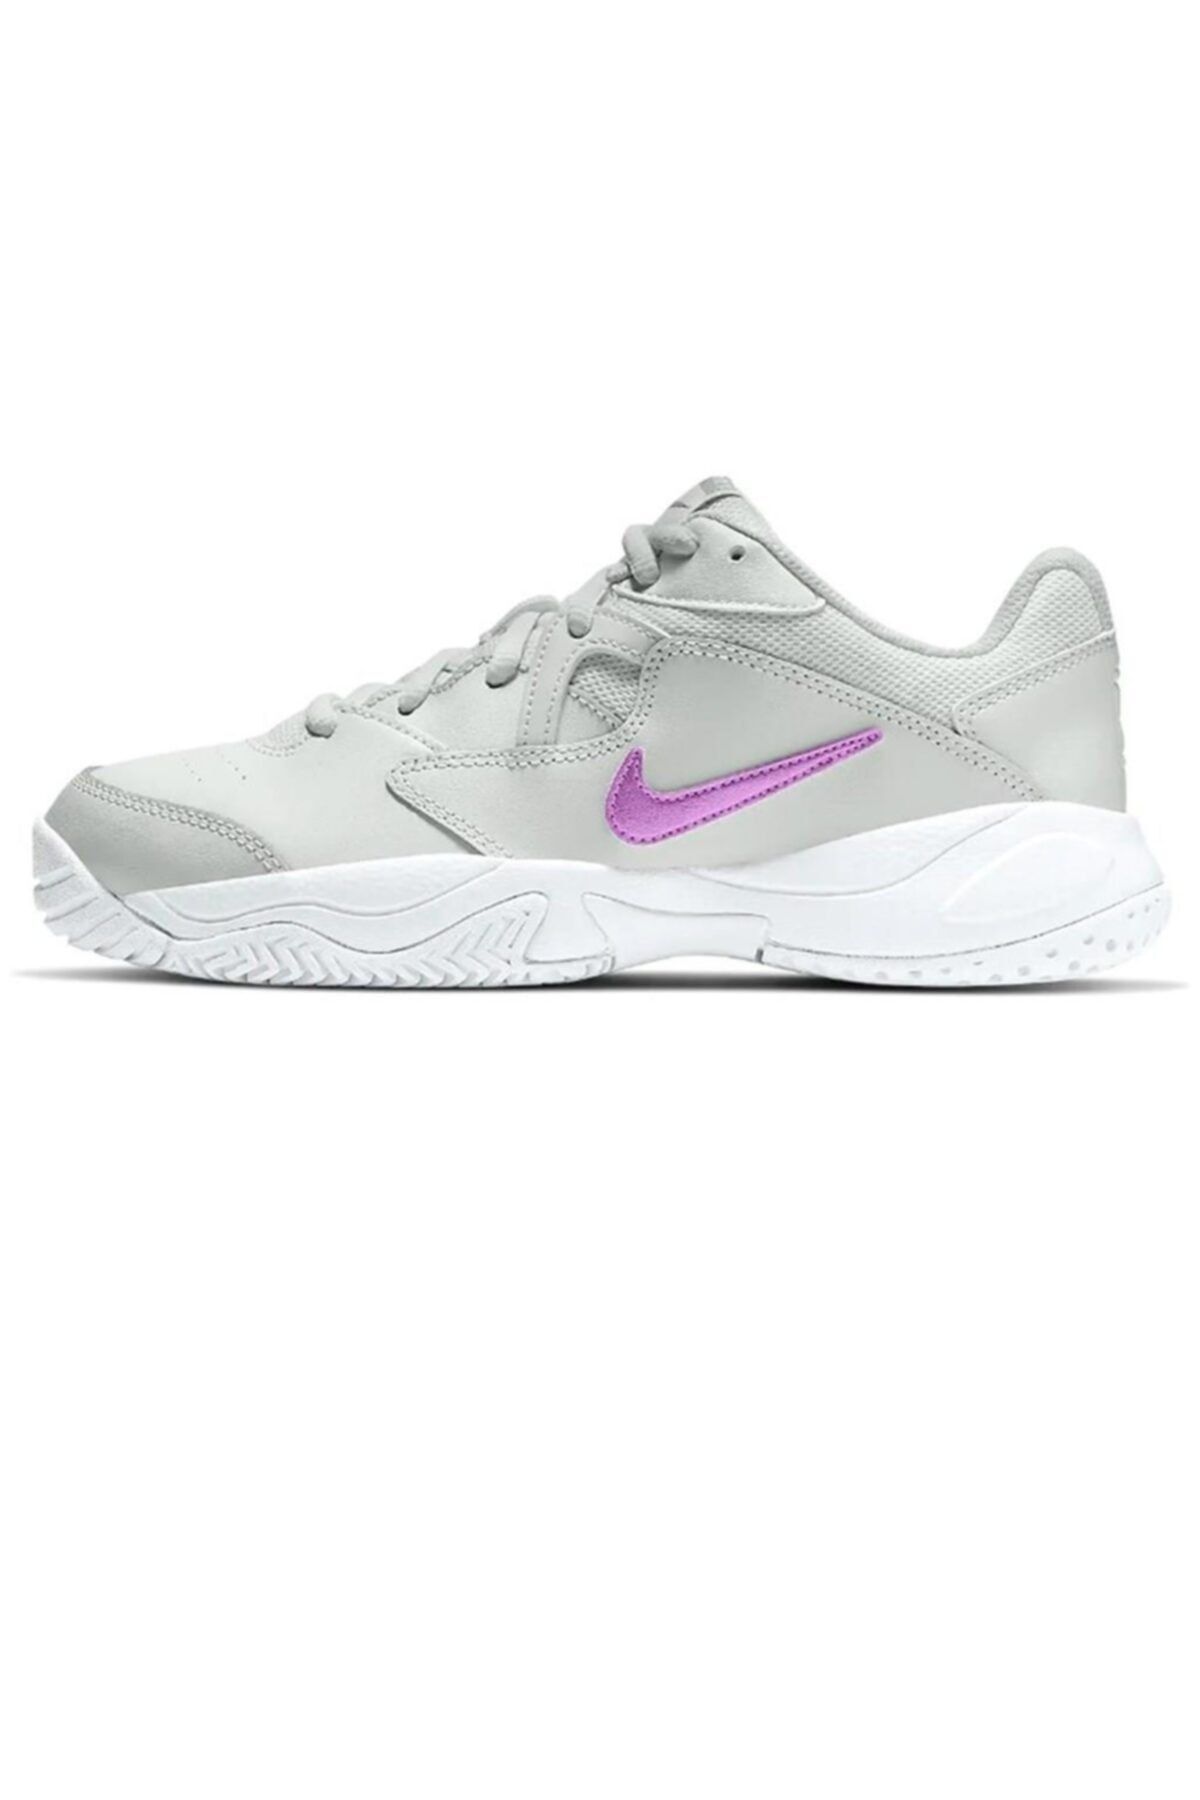 Nike Court Lite 2 Sert Kort Kadın Tenis Ayakkabısı